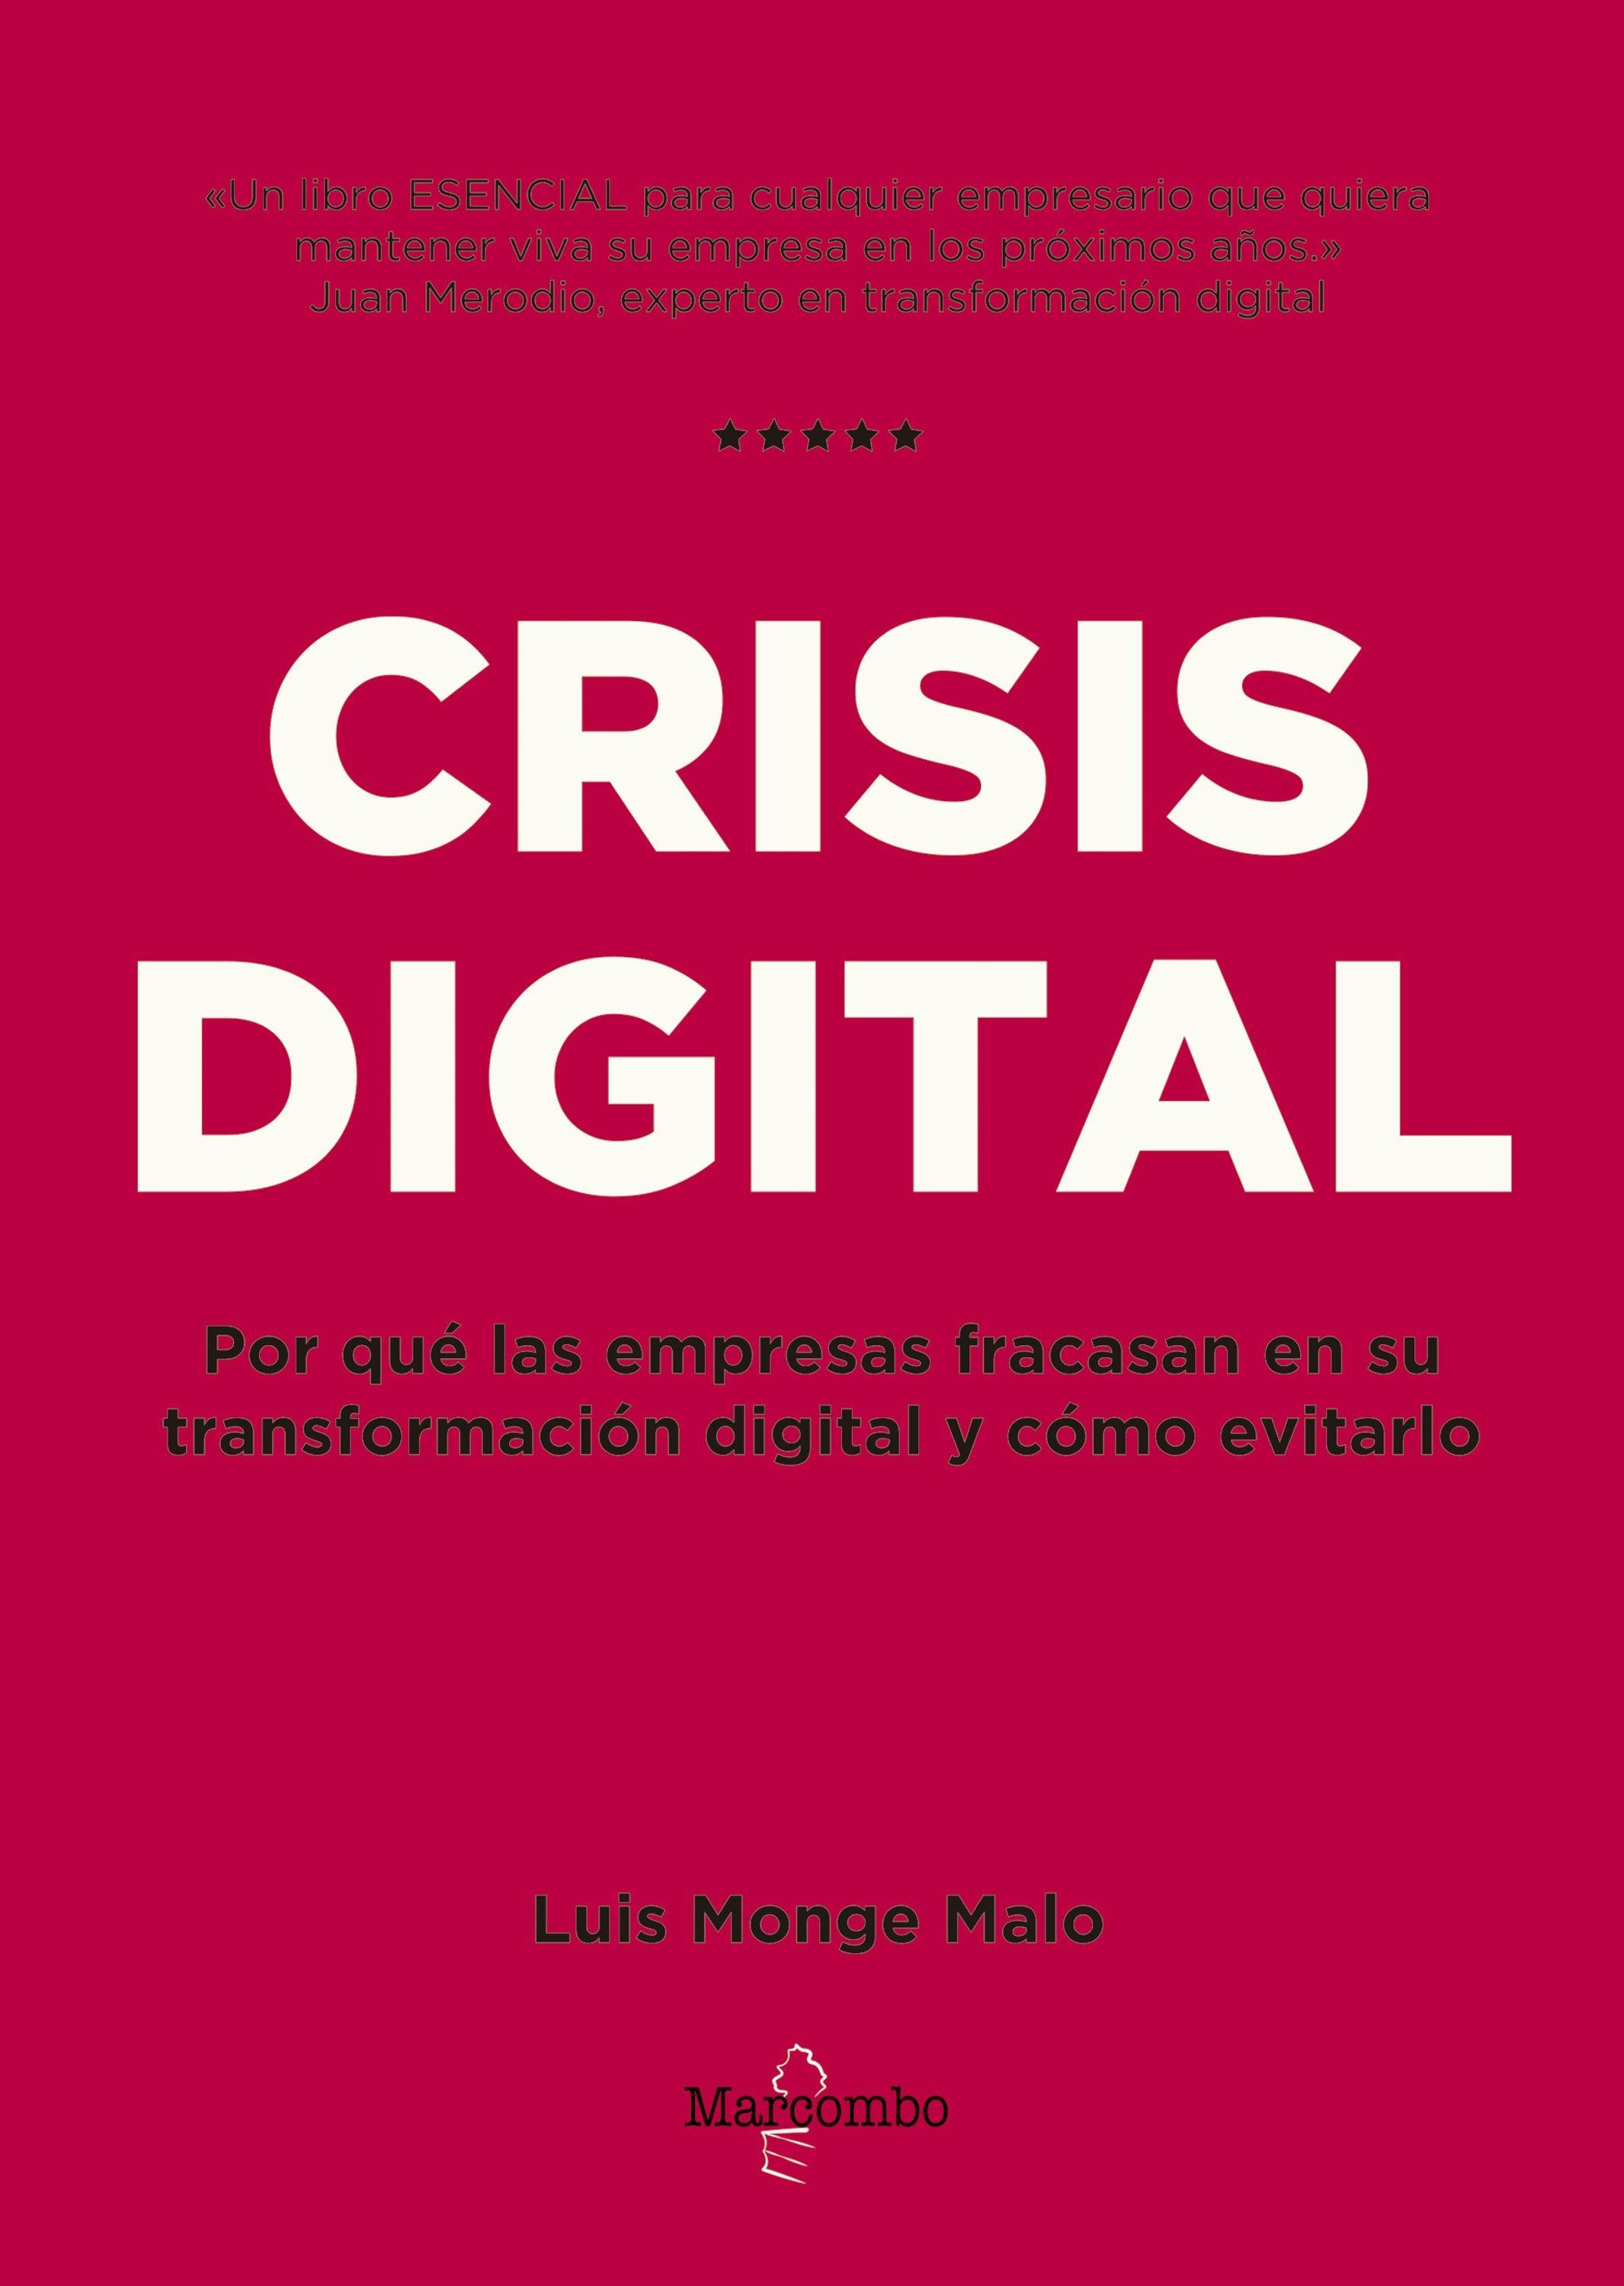 Crisis digital "Por qué las empresas fracasan en su transformación digital y cómo evitarlo "